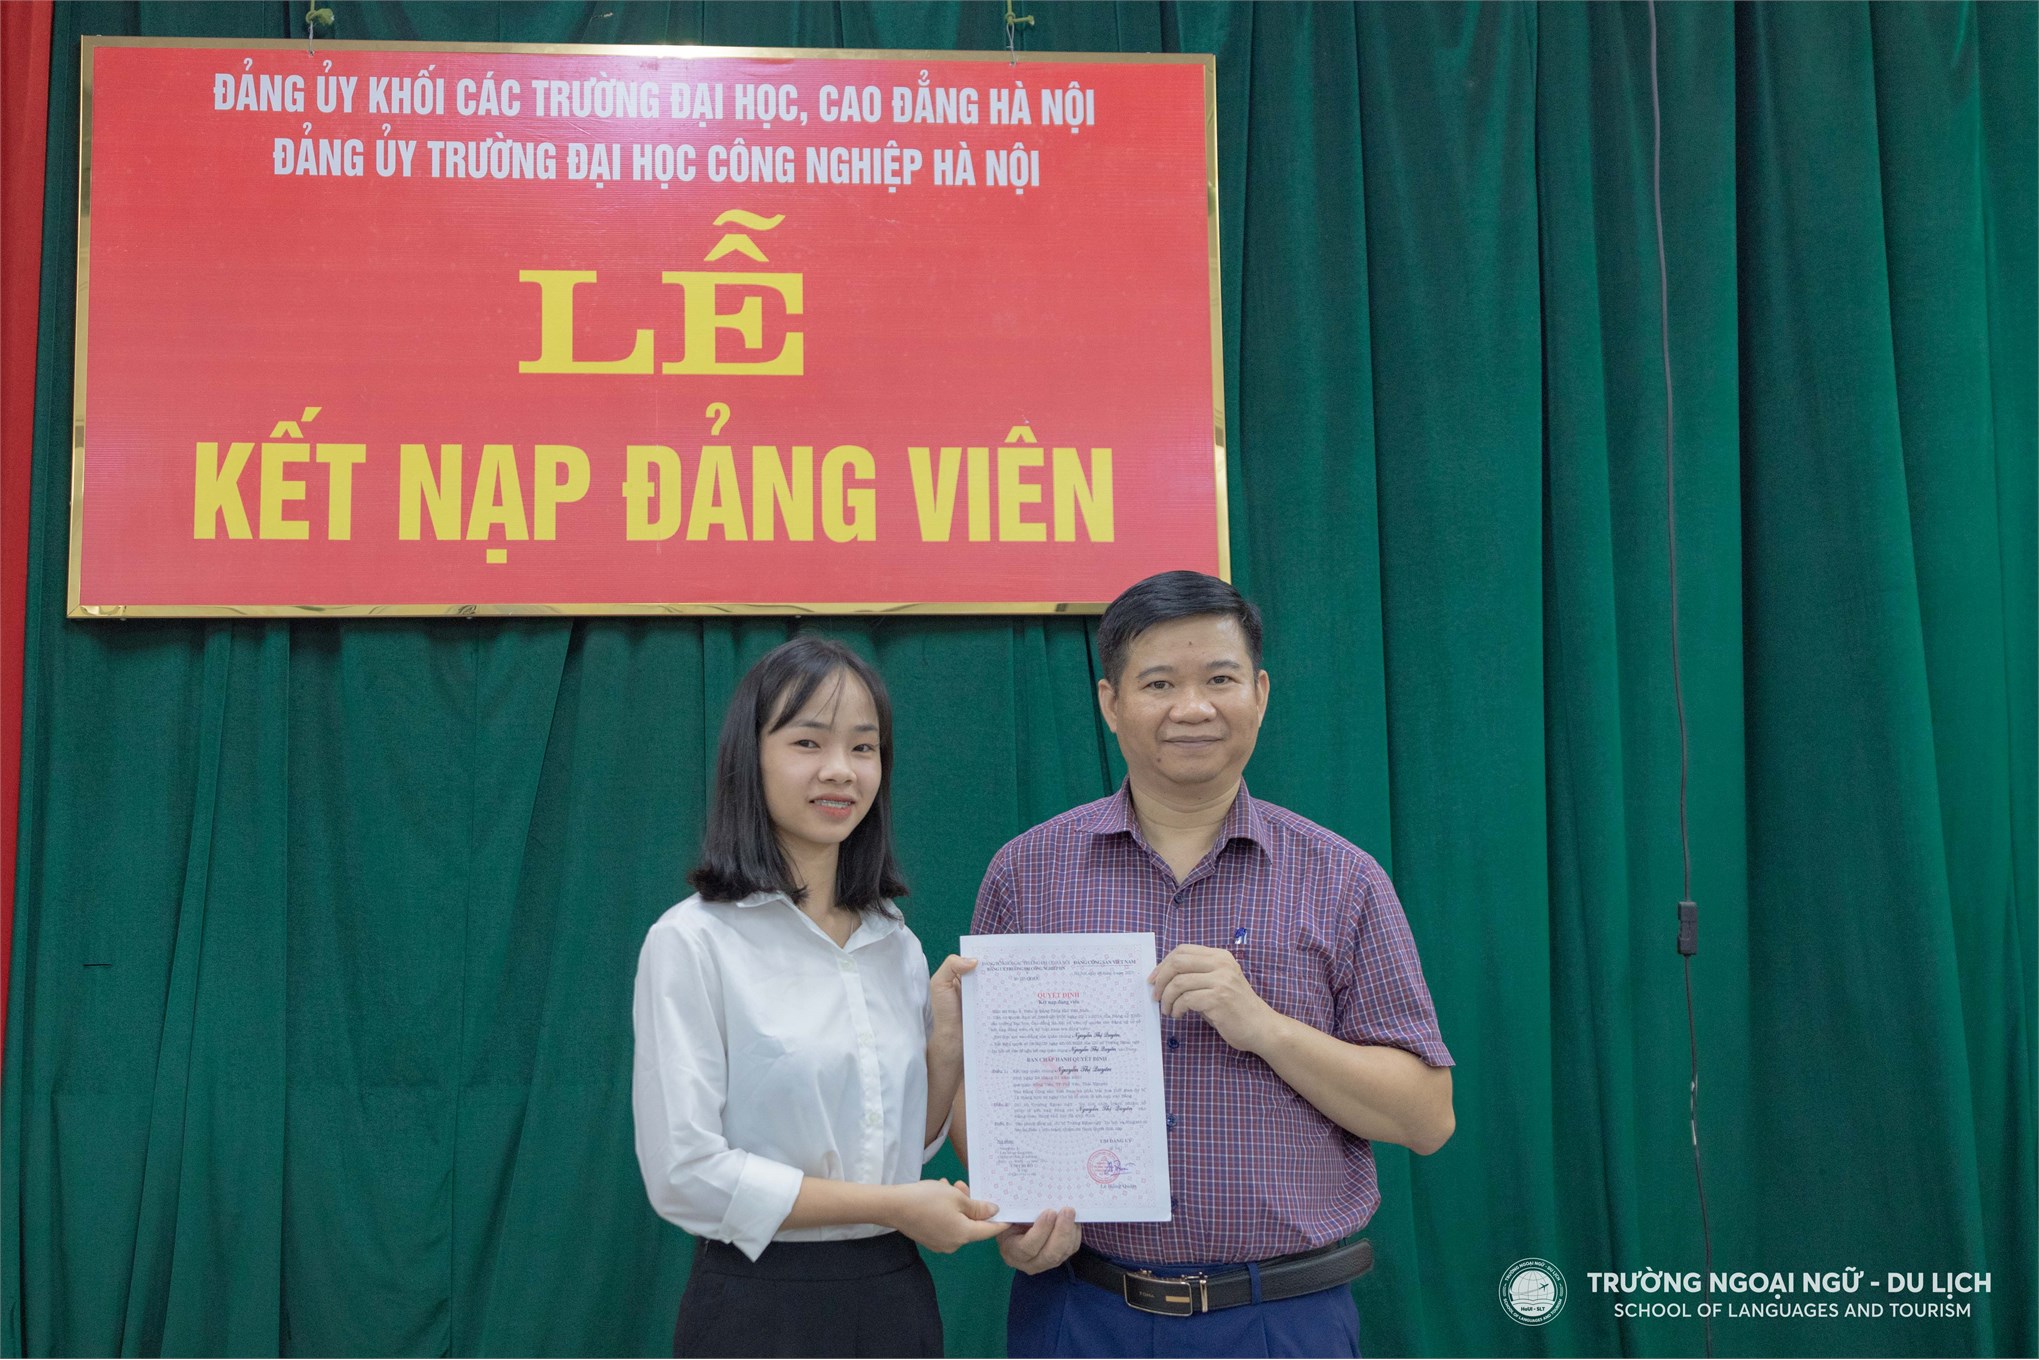 Chi bộ Trường Ngoại ngữ - Du lịch, Trường Đại học Công nghiệp Hà Nội tổ chức Lễ kết nạp cho 02 đảng viên mới